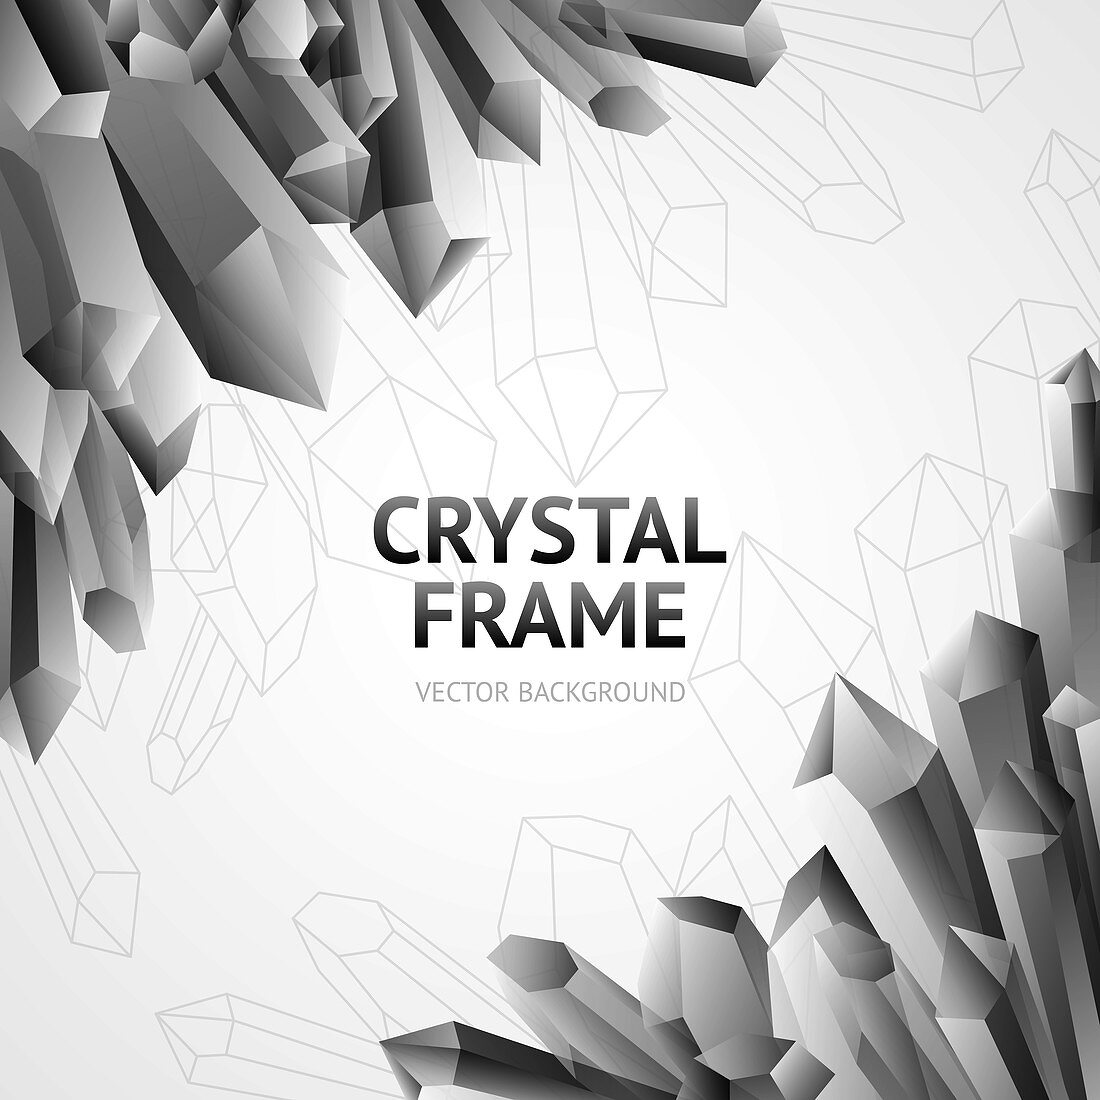 Crystals, illustration